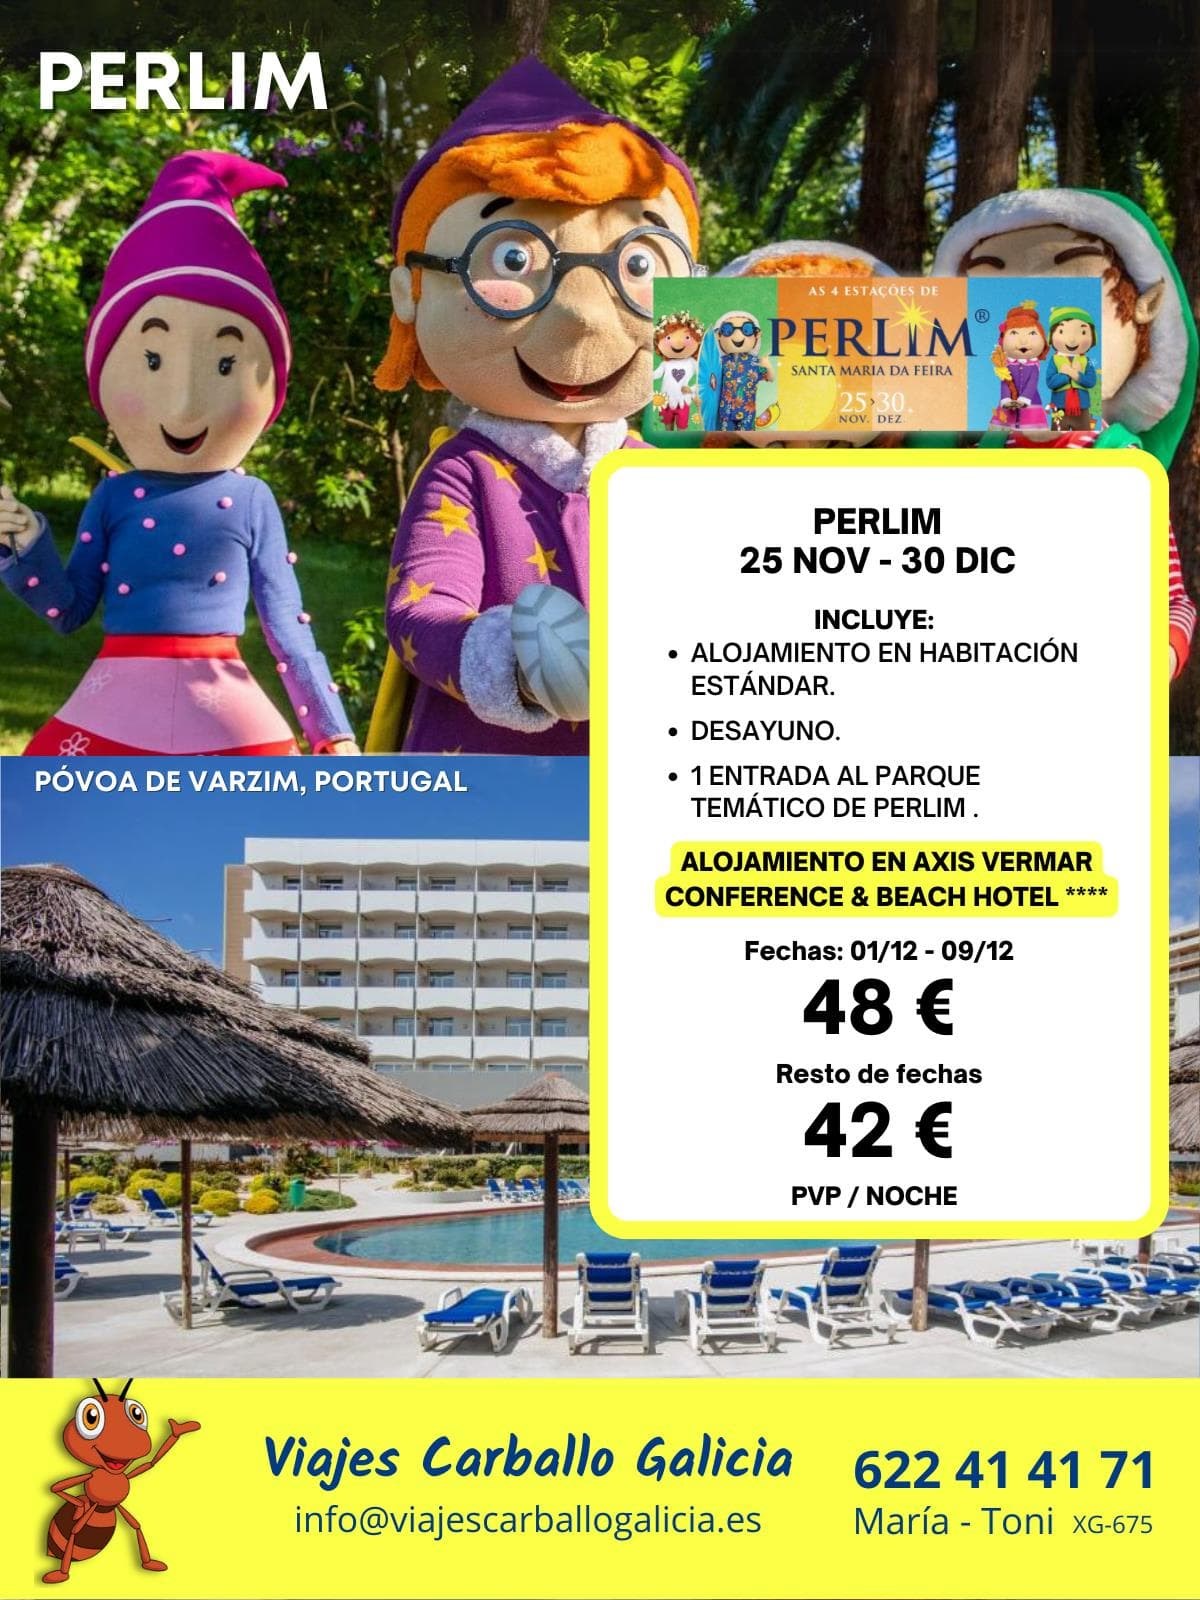 ¡Viajes exclusivos al maravilloso mundo de Perlim! - Imagen 7